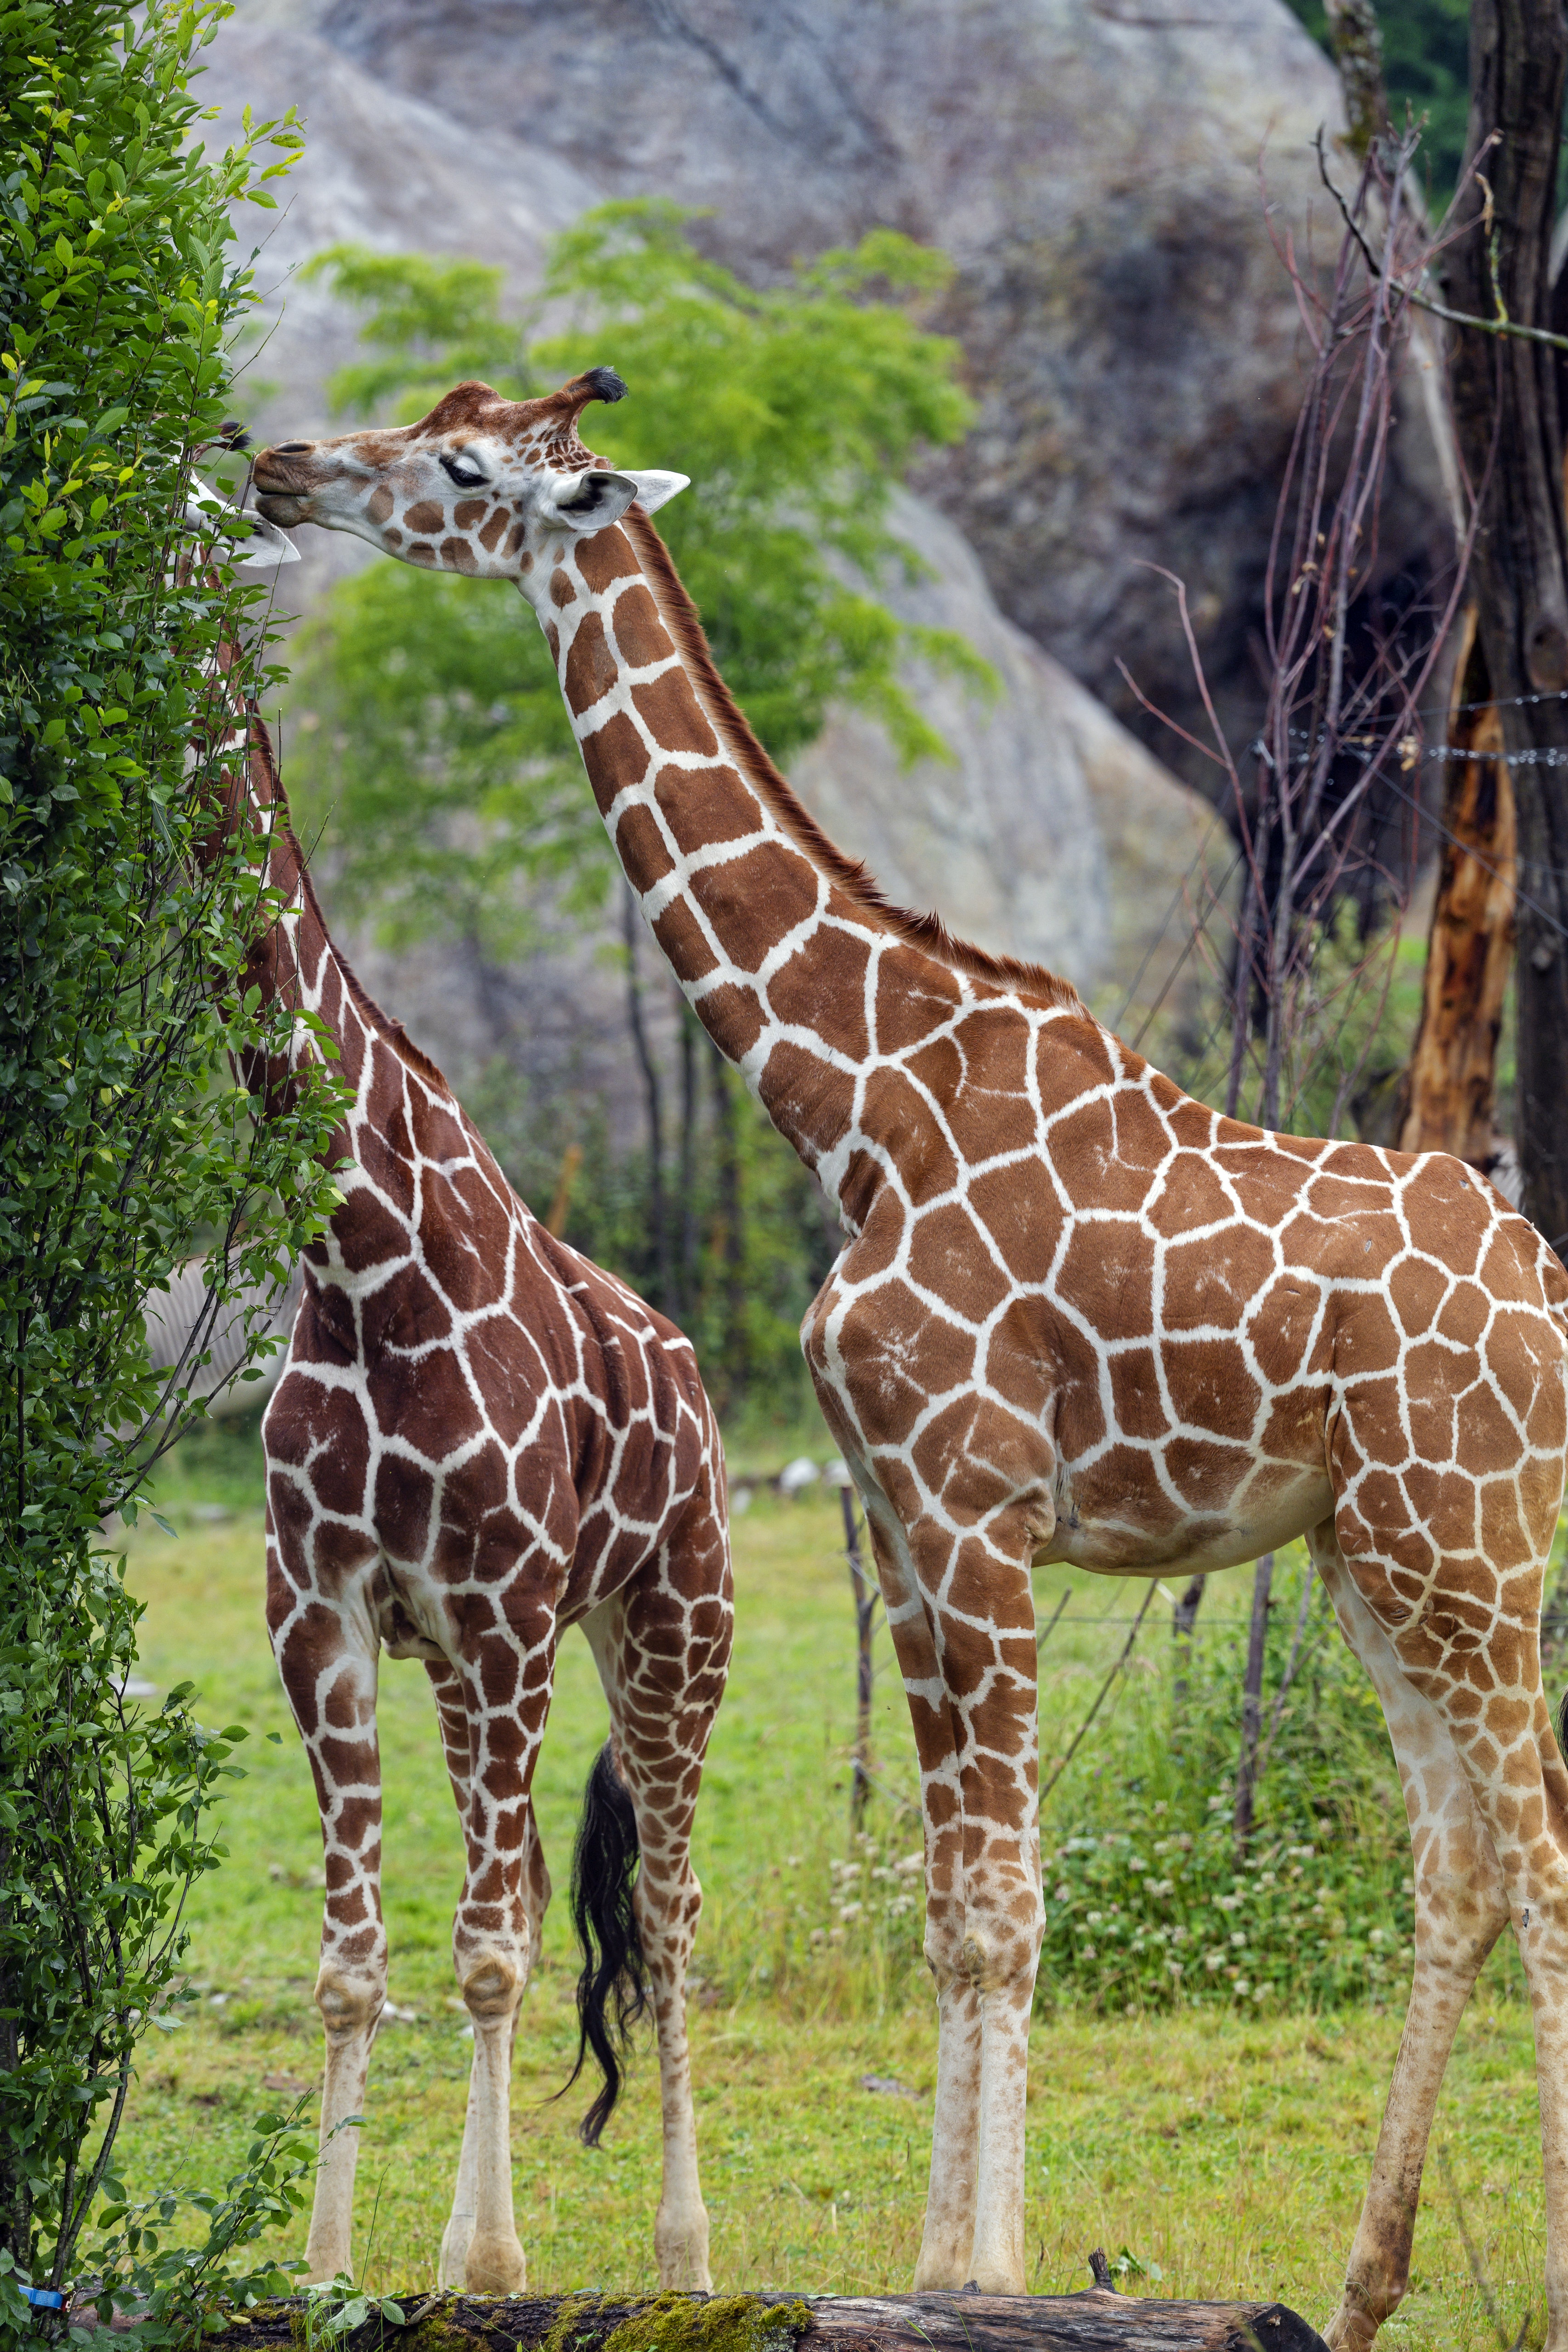 Скачать обои Жирафы на телефон бесплатно